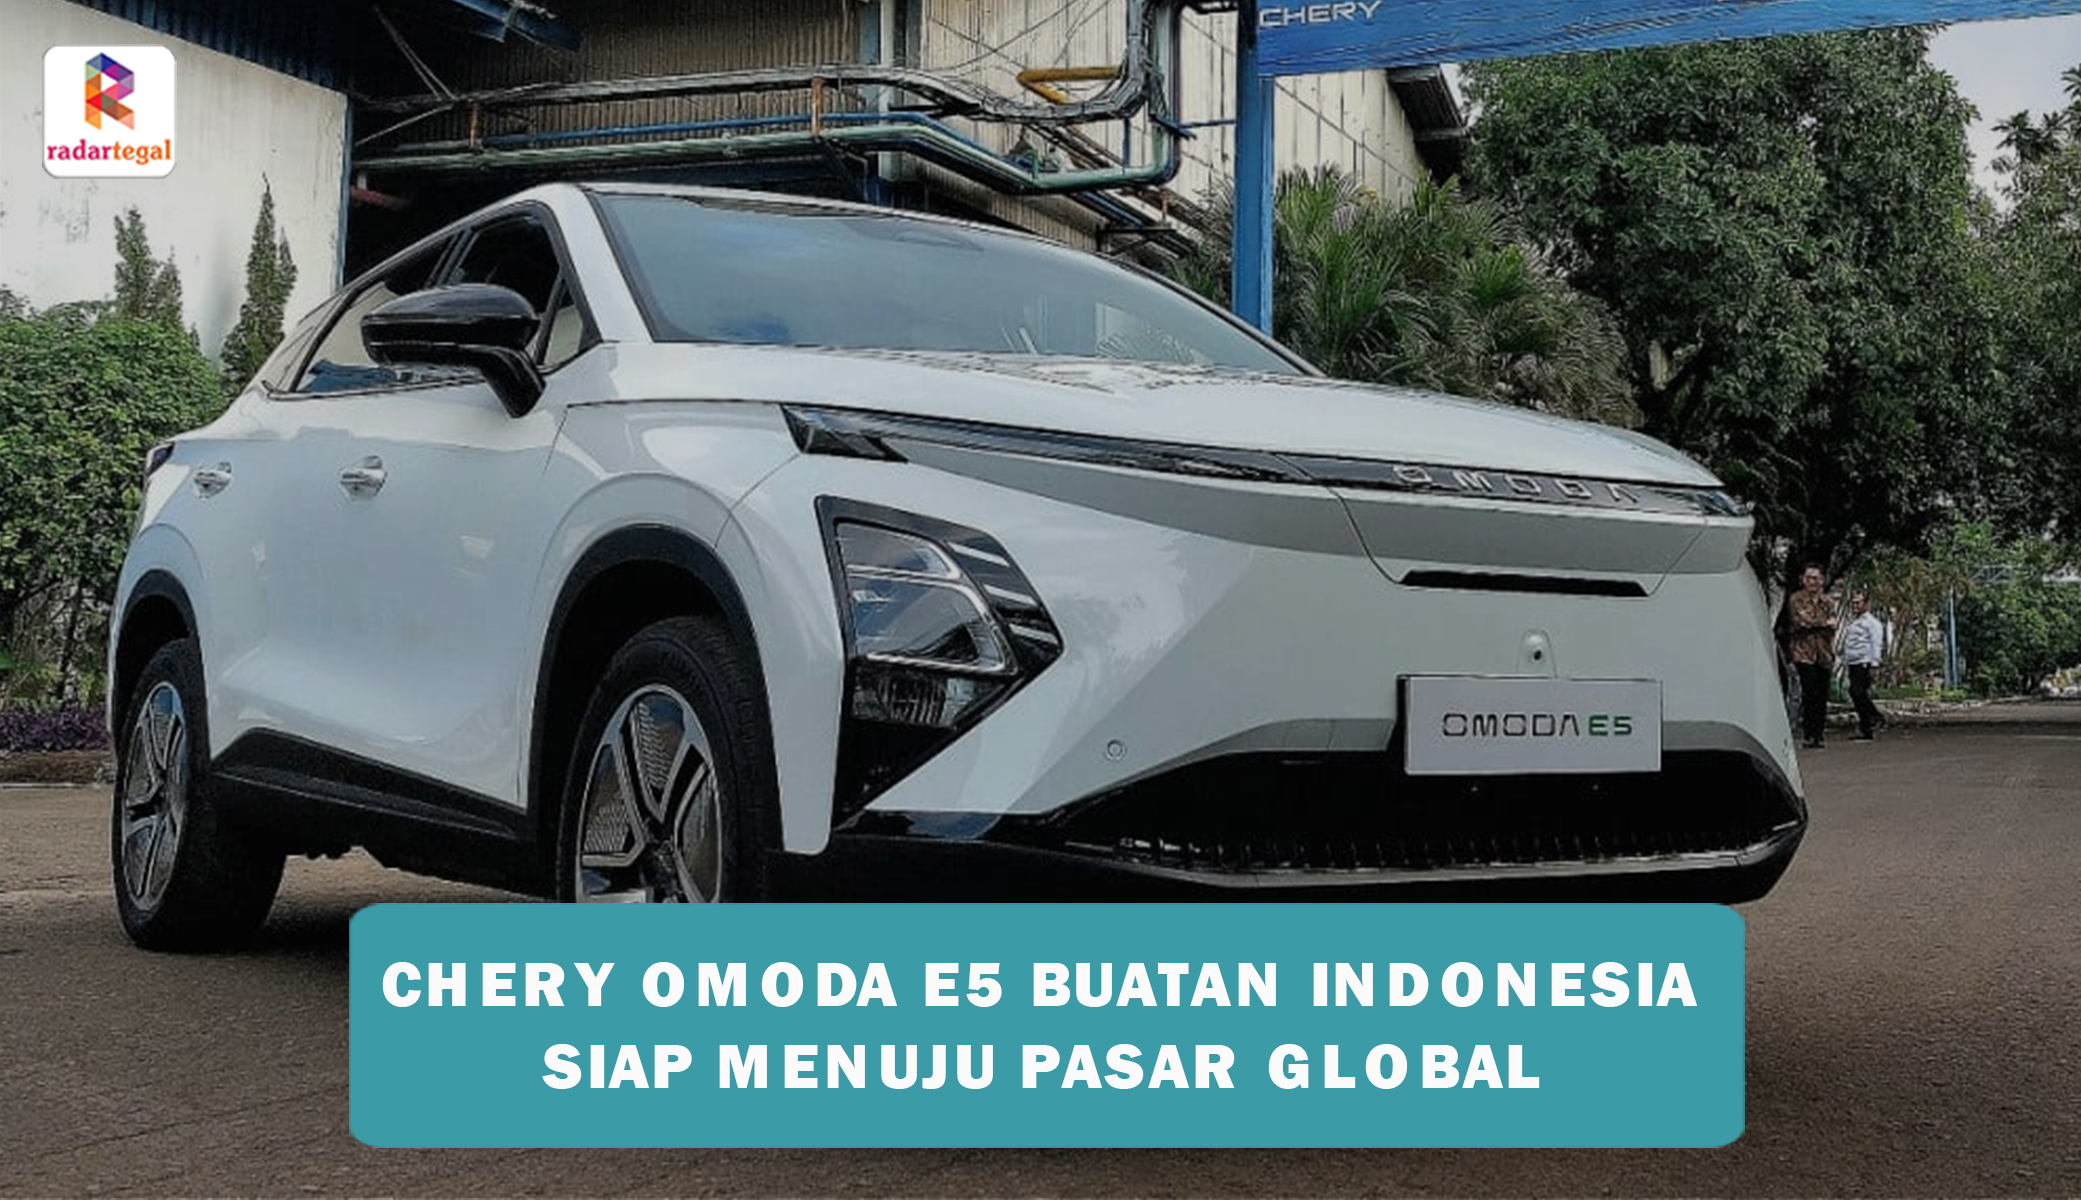 Chery Omoda E5 Buatan Indonesia Tembus ke Pasaran Dunia, Berikut Keunggulan Fitur-fiturnya